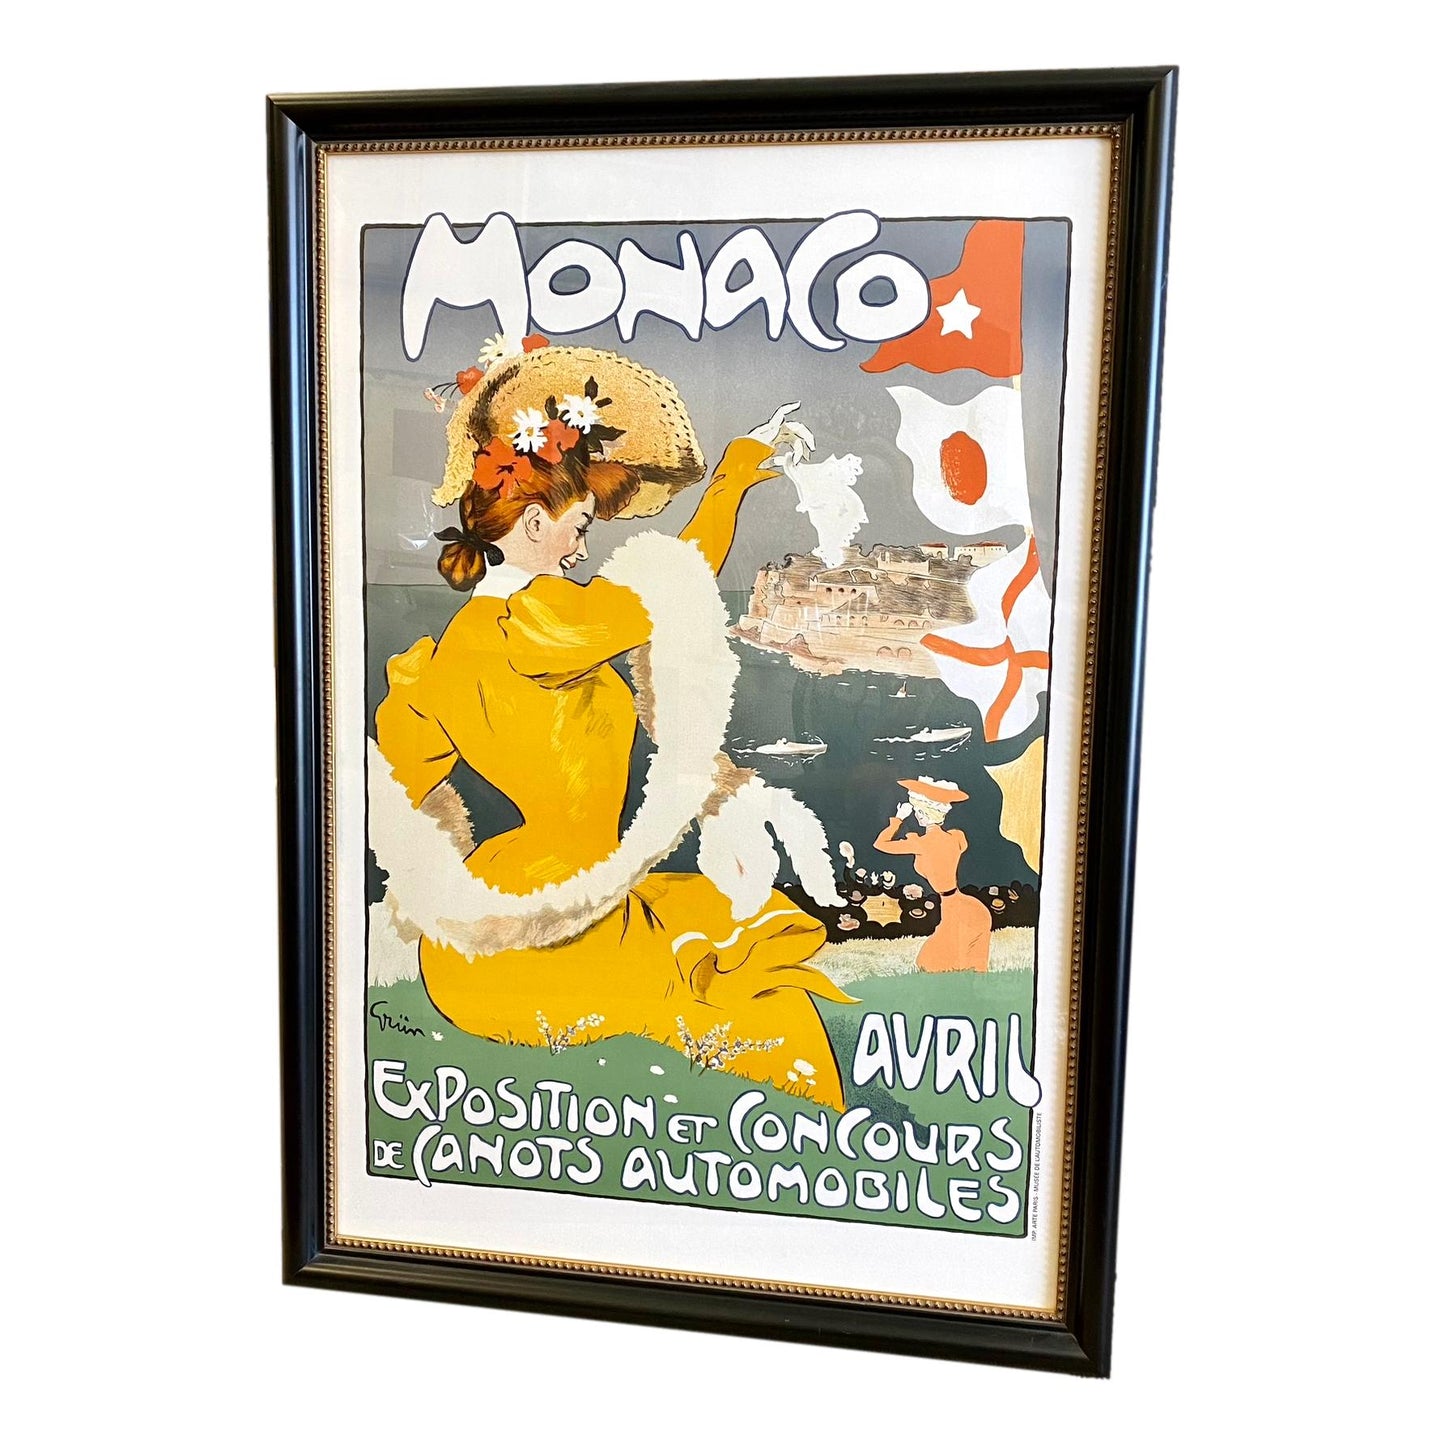 Custom Framed Monaco Exposition Advertising Poster